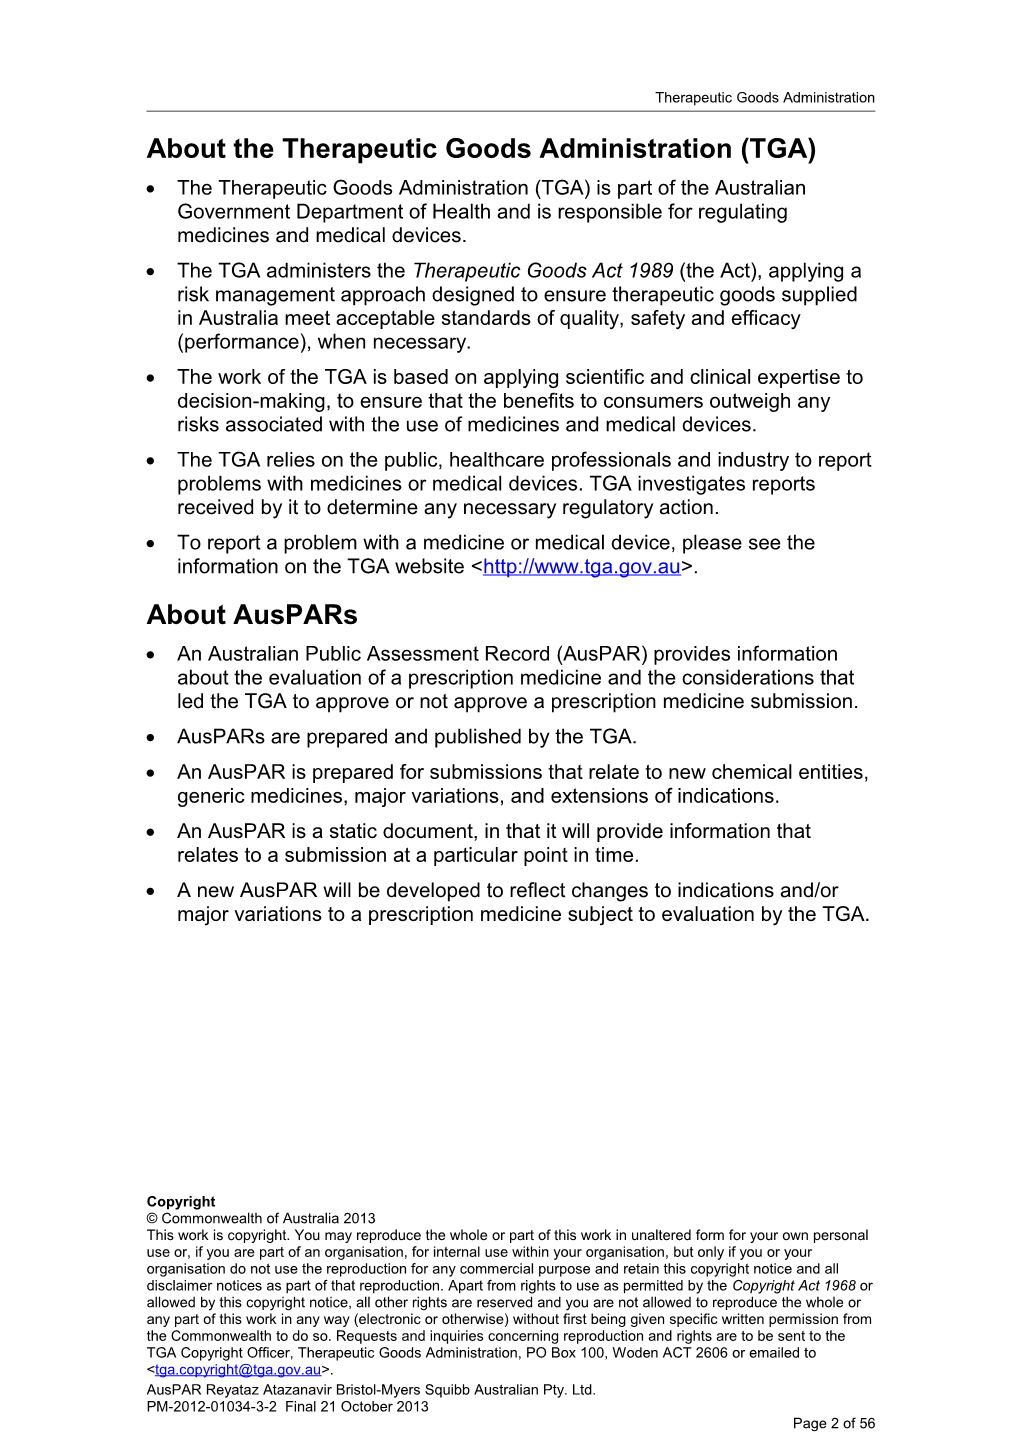 Australian Public Assessment Report for Atazanavir